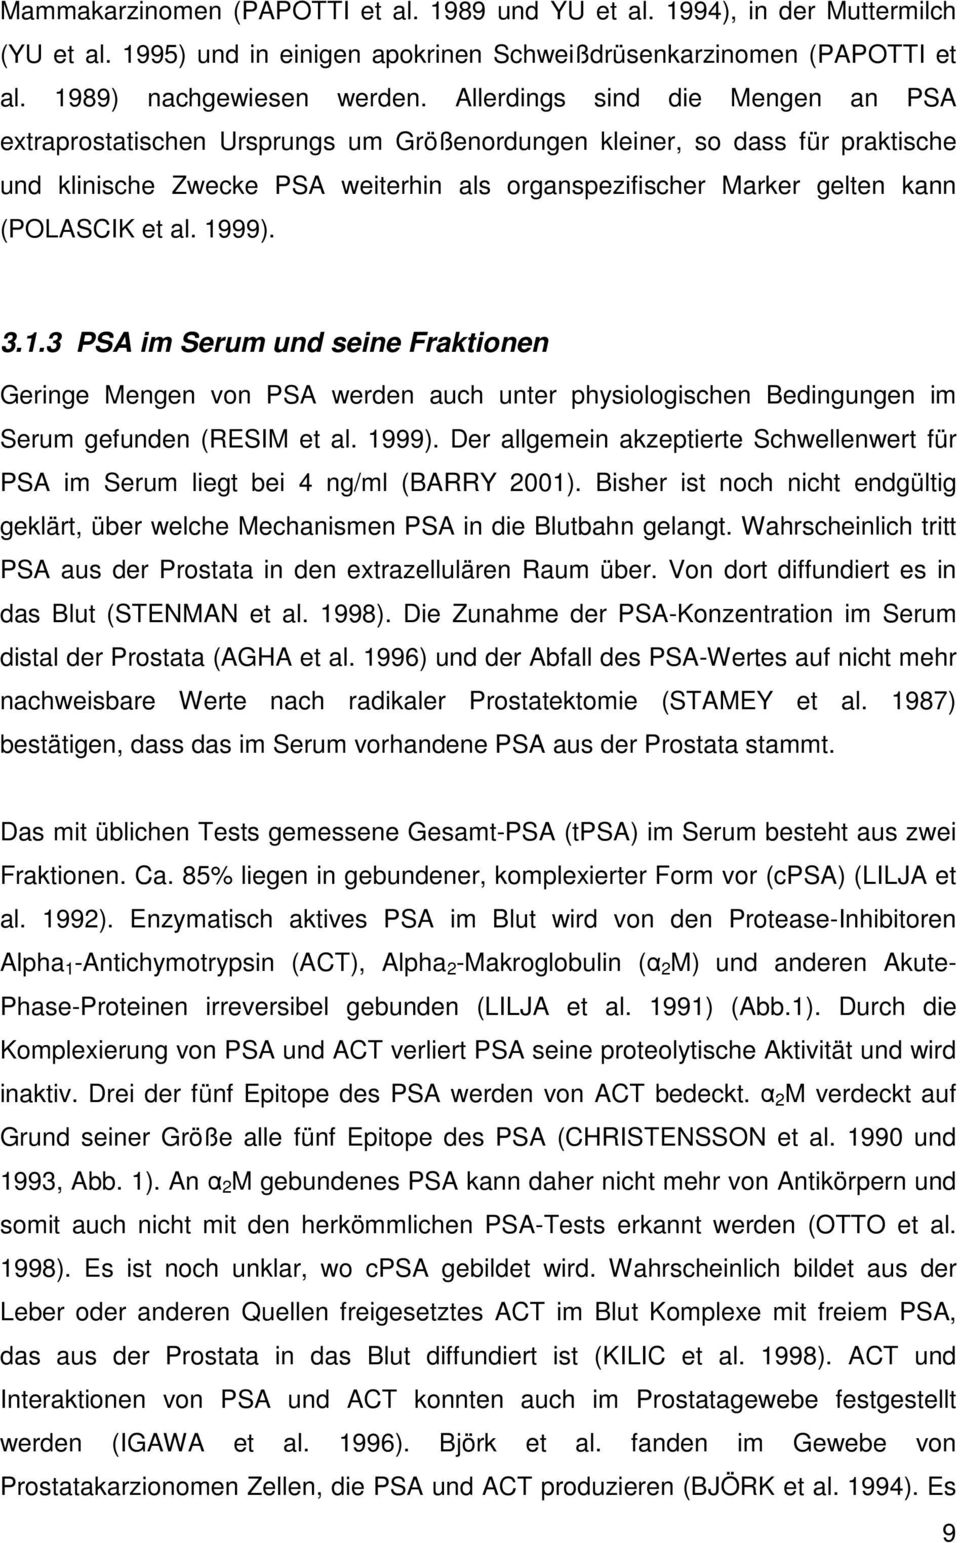 et al. 1999). 3.1.3 PSA im Serum und seine Fraktionen Geringe Mengen von PSA werden auch unter physiologischen Bedingungen im Serum gefunden (RESIM et al. 1999). Der allgemein akzeptierte Schwellenwert für PSA im Serum liegt bei 4 ng/ml (BARRY 2001).